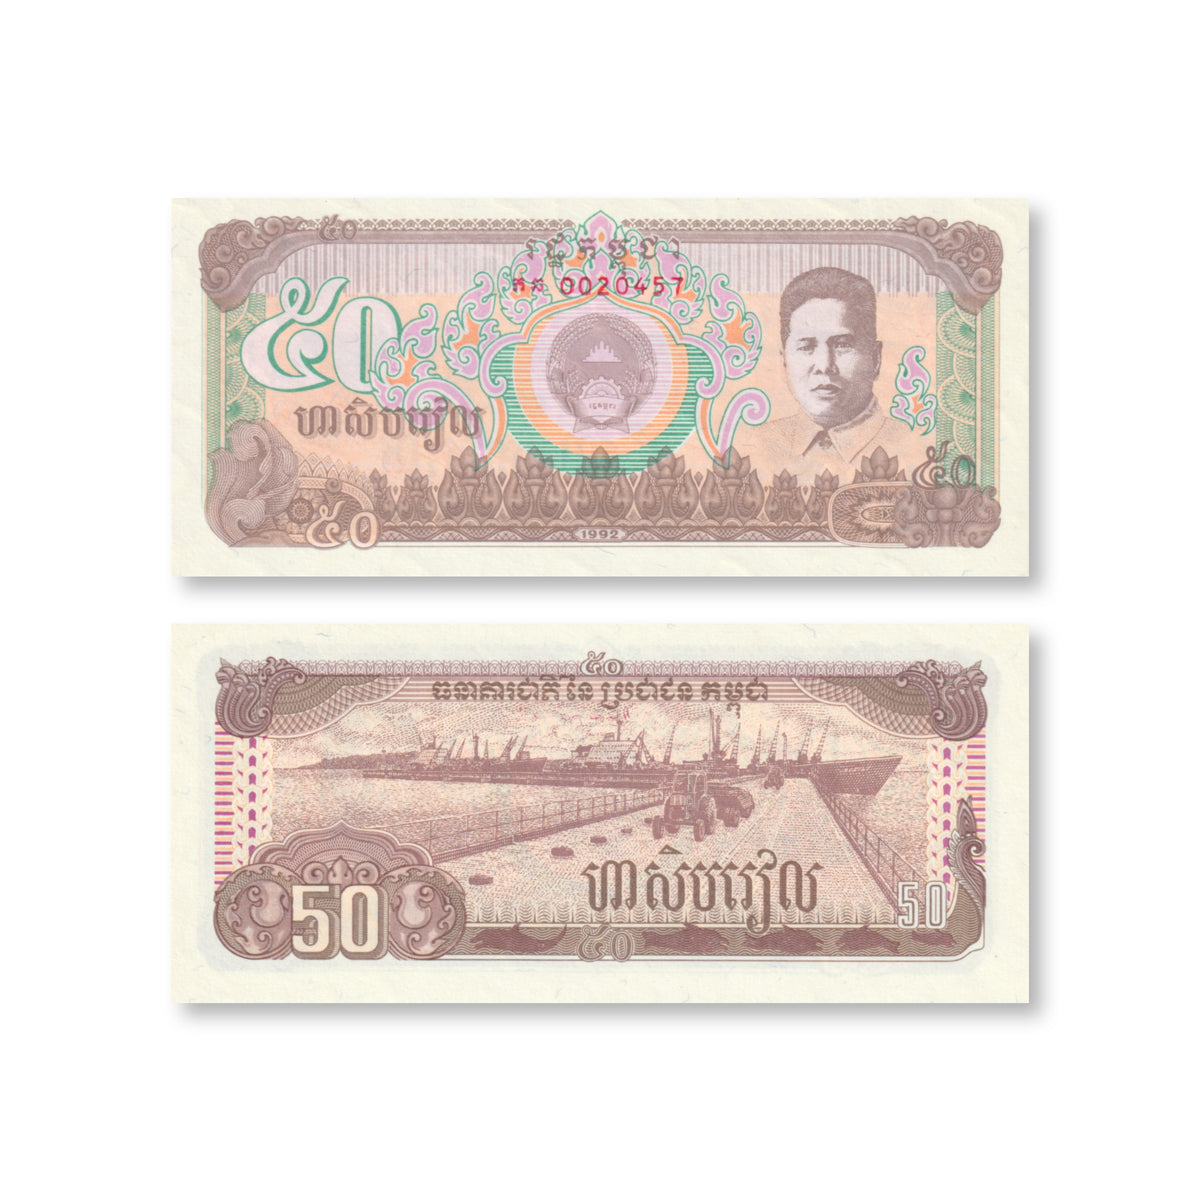 Cambodia 50 Riels, 1992, B311a, P35a, UNC